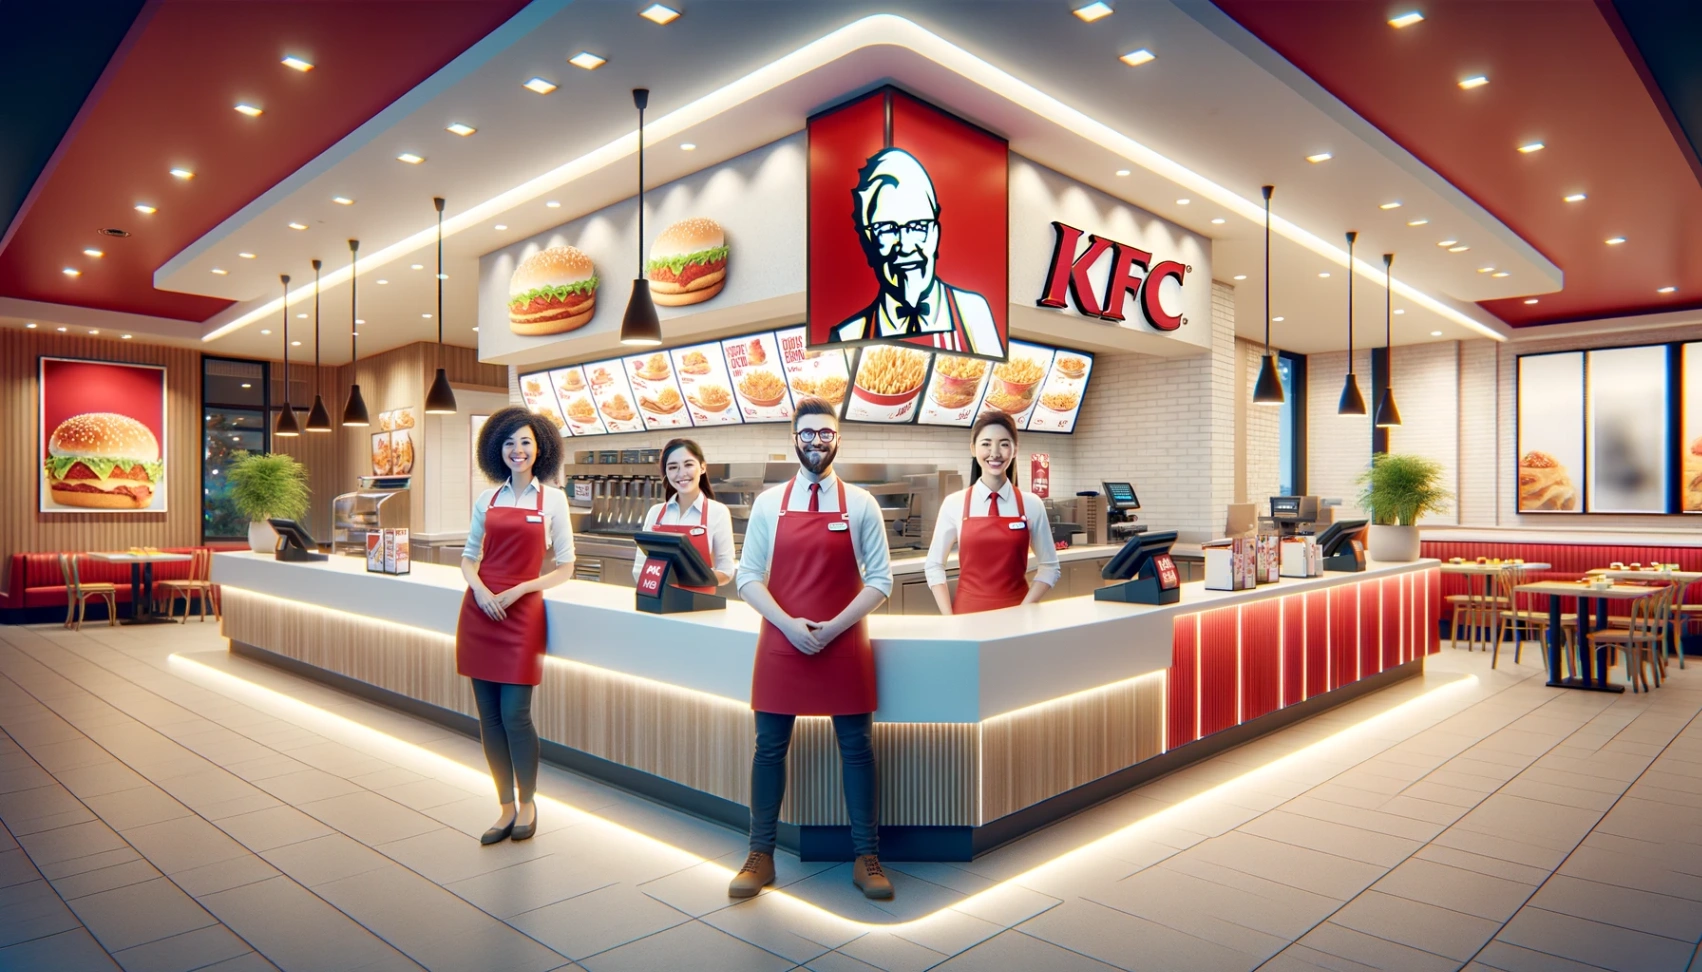 KFC - Apprenez comment postuler pour des emplois dès aujourd'hui